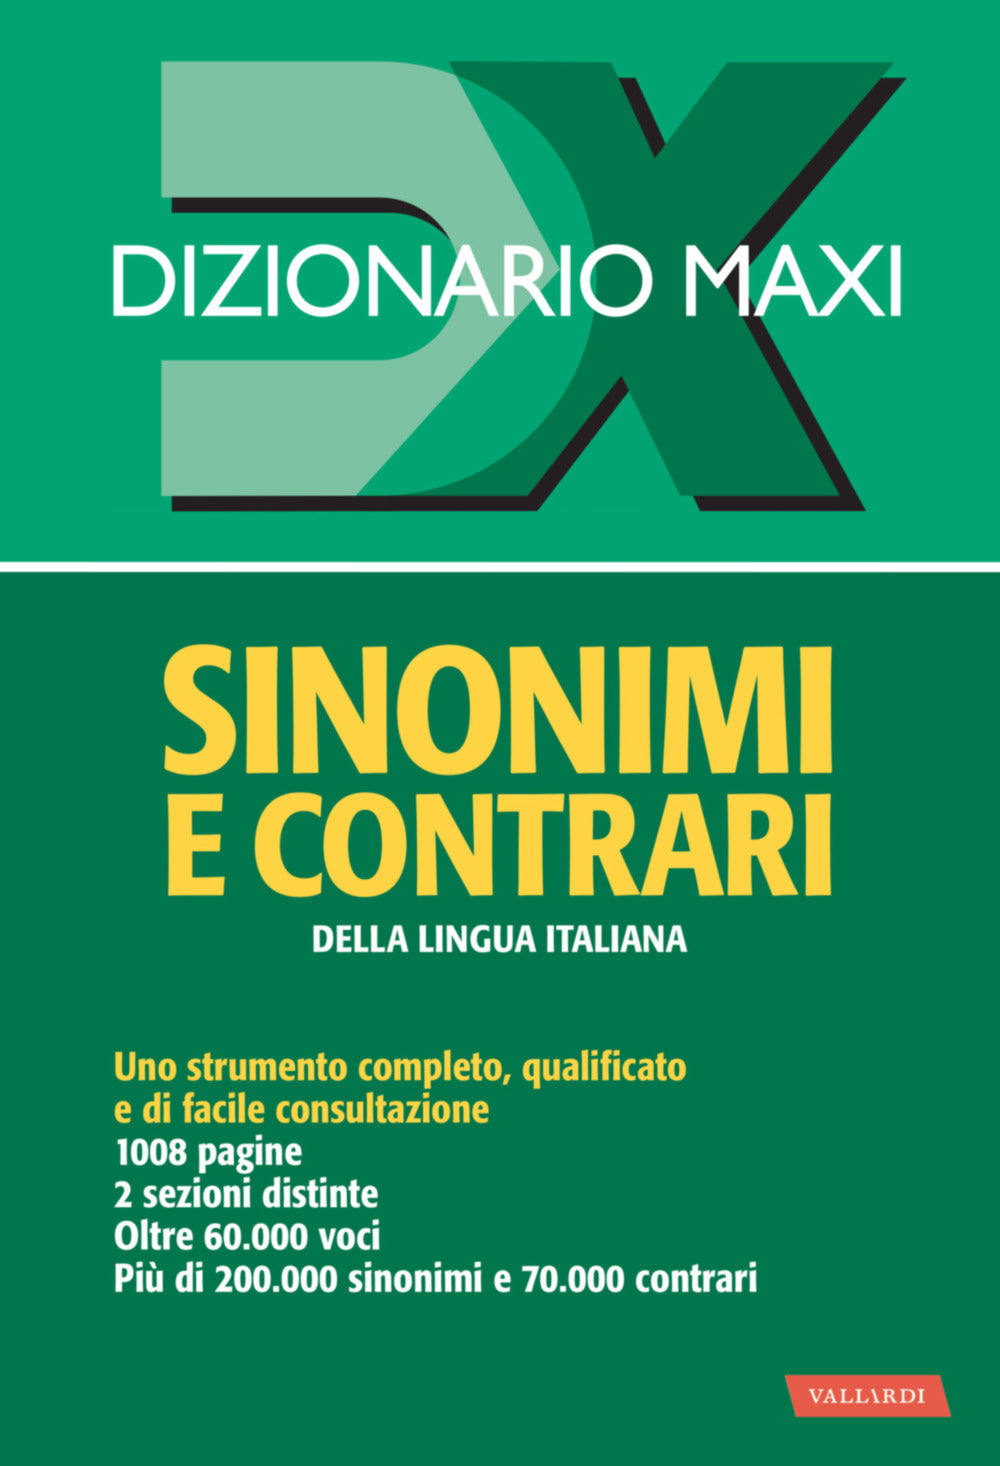 Dizionario maxi. Sinonimi e contrari della lingua italiana.